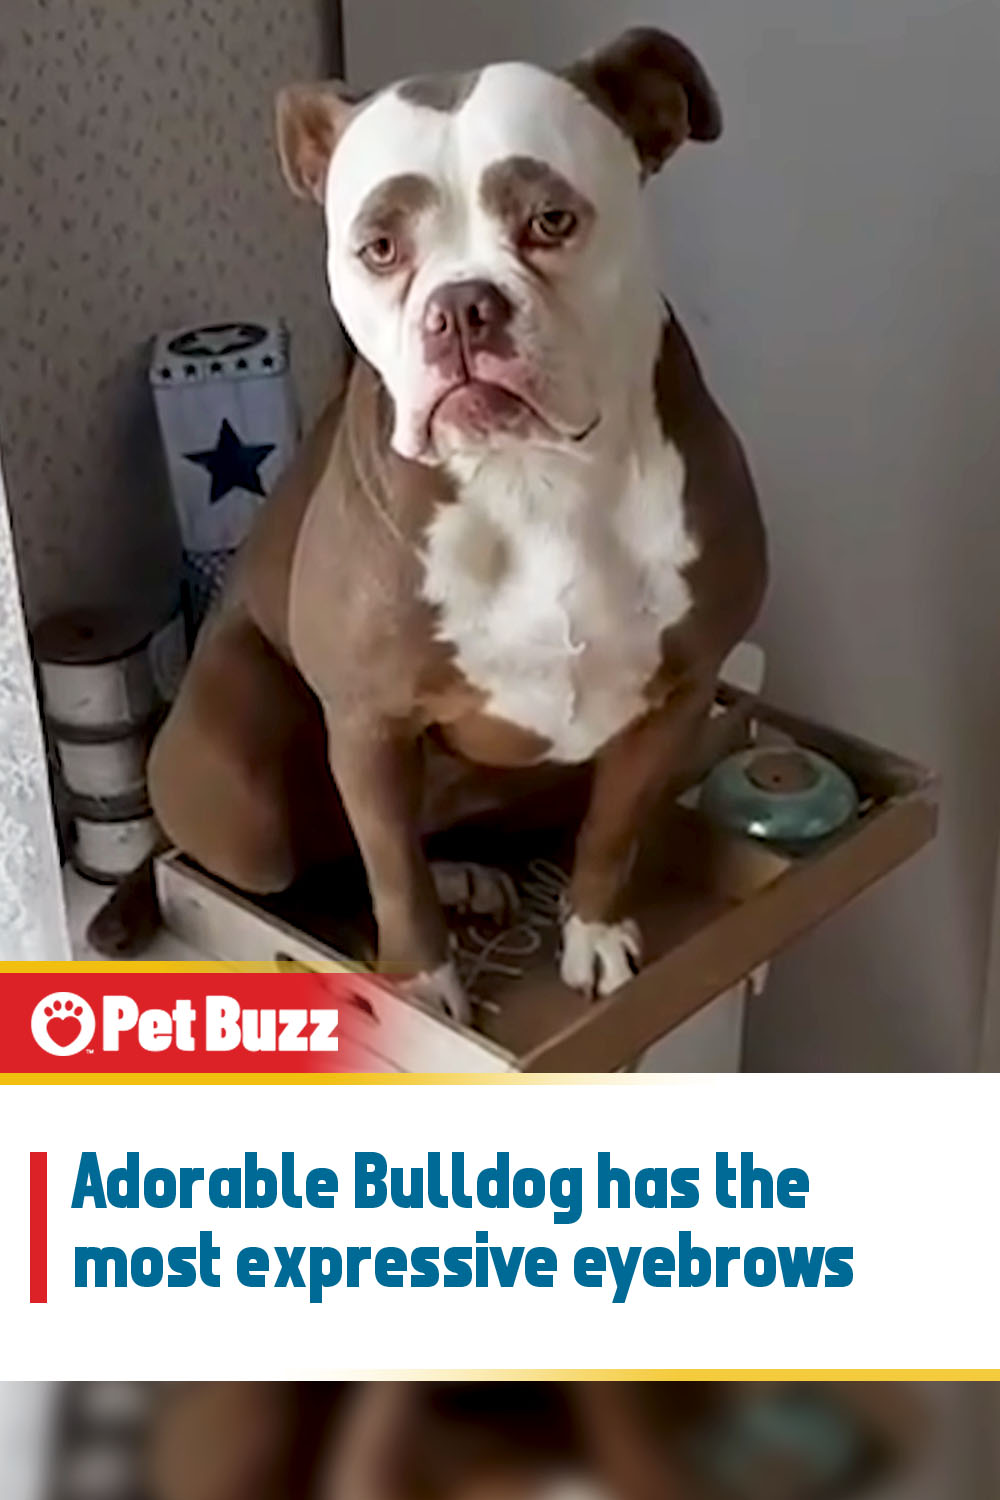 Adorable Bulldog has the most expressive eyebrows